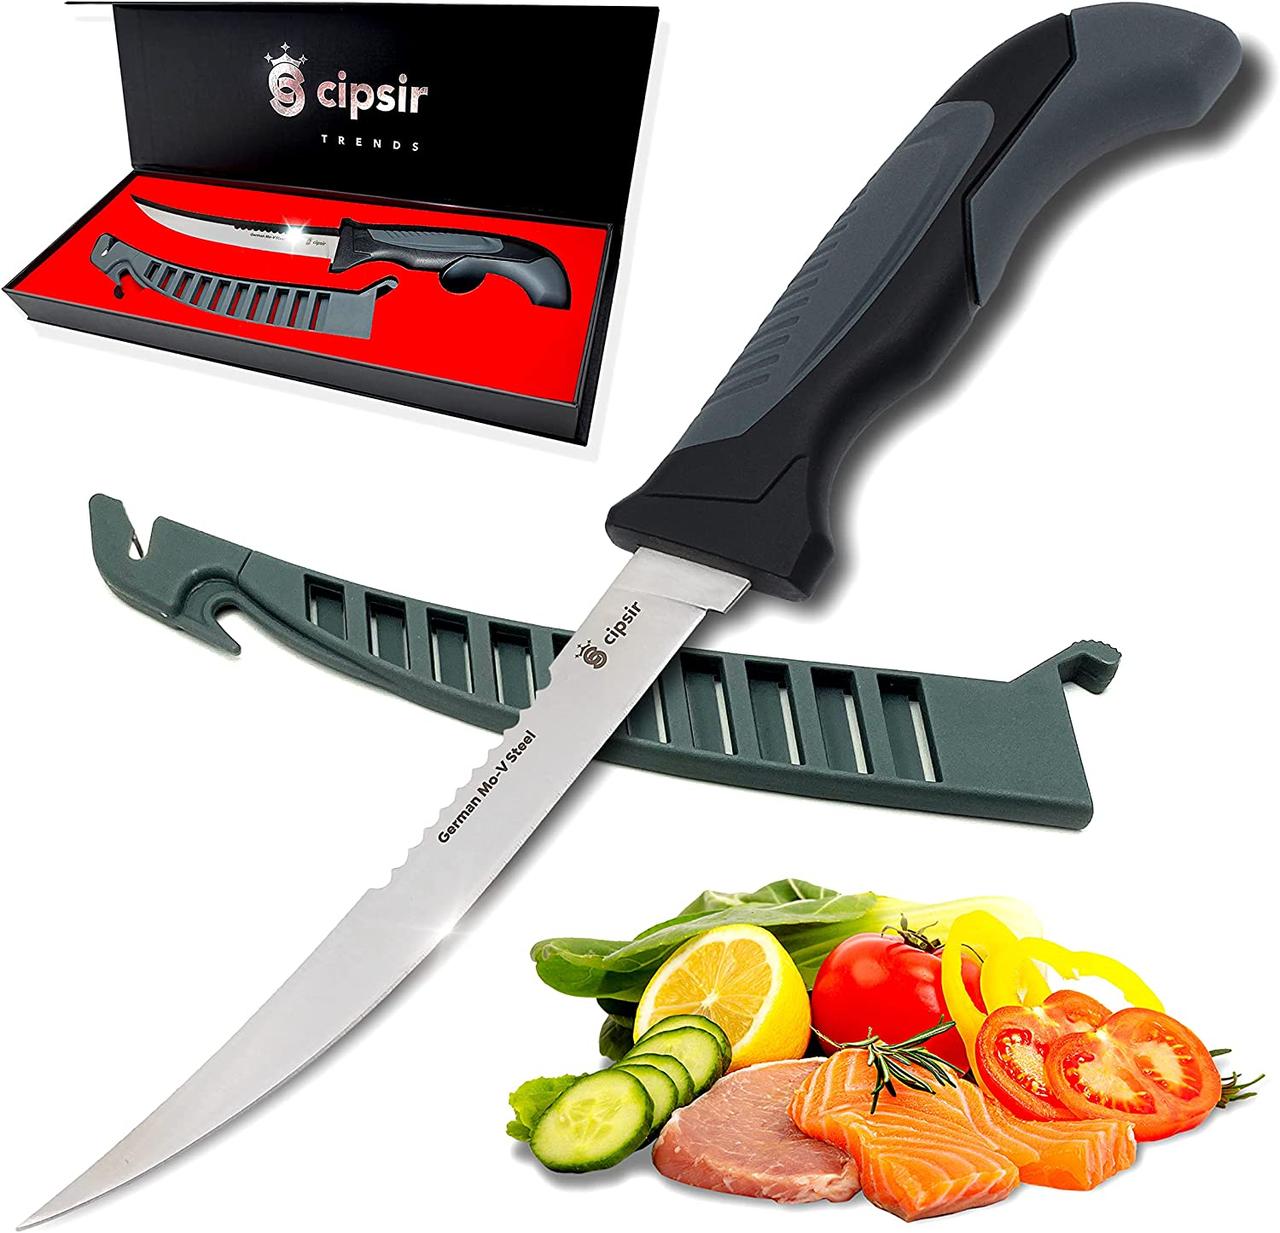 Cipsir Meat and fish Fillet Knife - Best Fillet Knife - Fish Fillet Knife